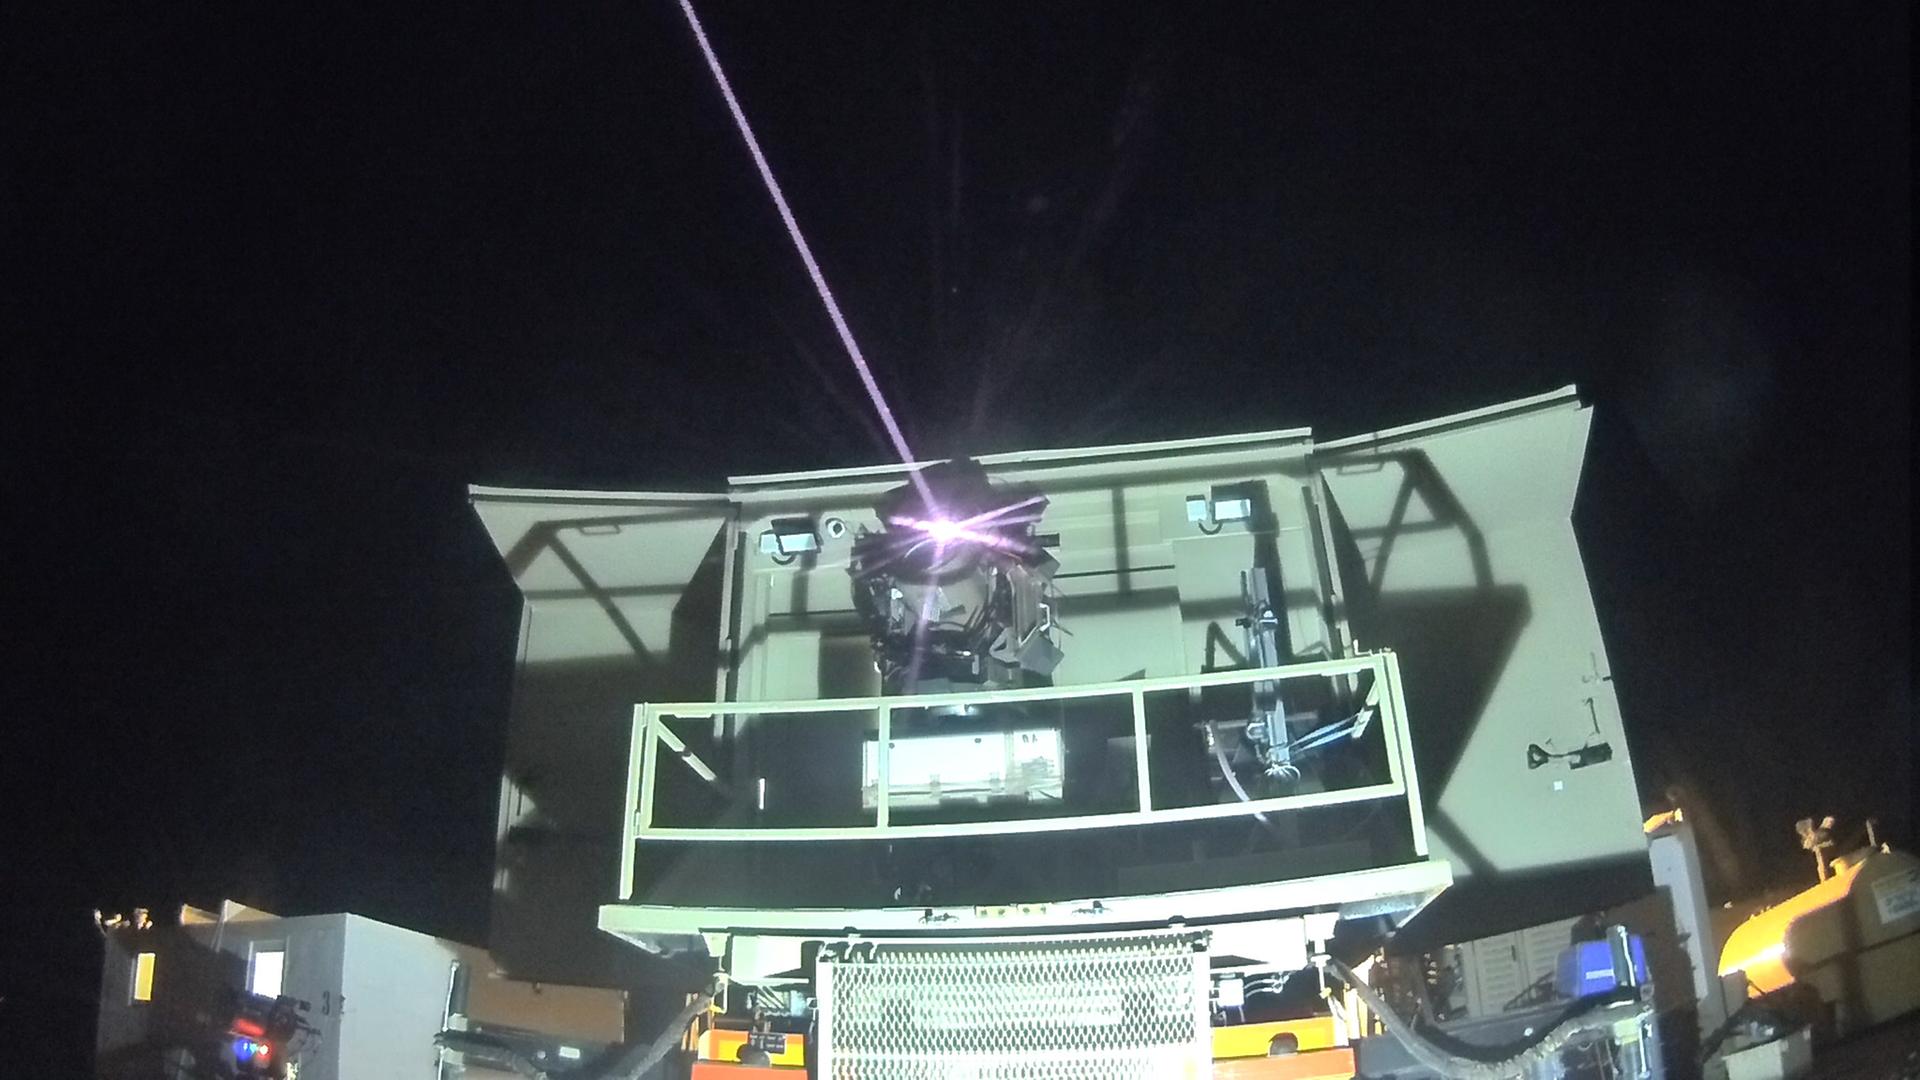 Das Bild zeigt das israelische Raketenabwehrsystem Iron Beam, das seinen Laserstrahl in den schwarzen Nachthimmel schießt.